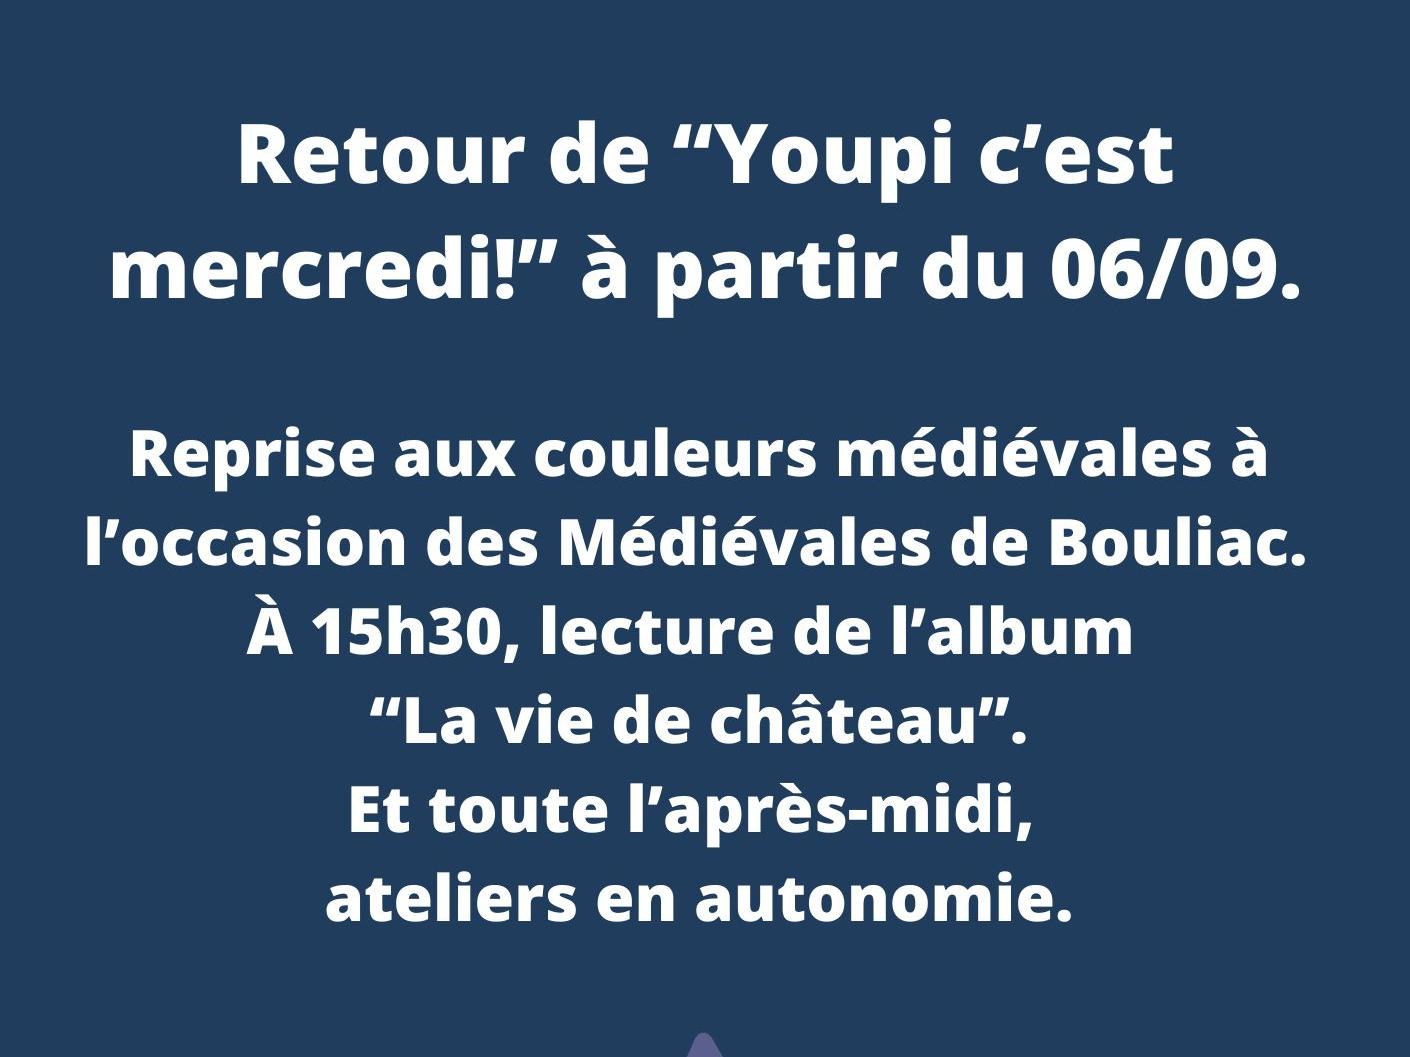 Retour de "Youpi c'est mercredi !" à la bibliothèque de Bouliac tous les mercredis après-midis. Lecture d'album à 15h30 le 6 septembre dans le cadre des Médiévales de Bouliac.